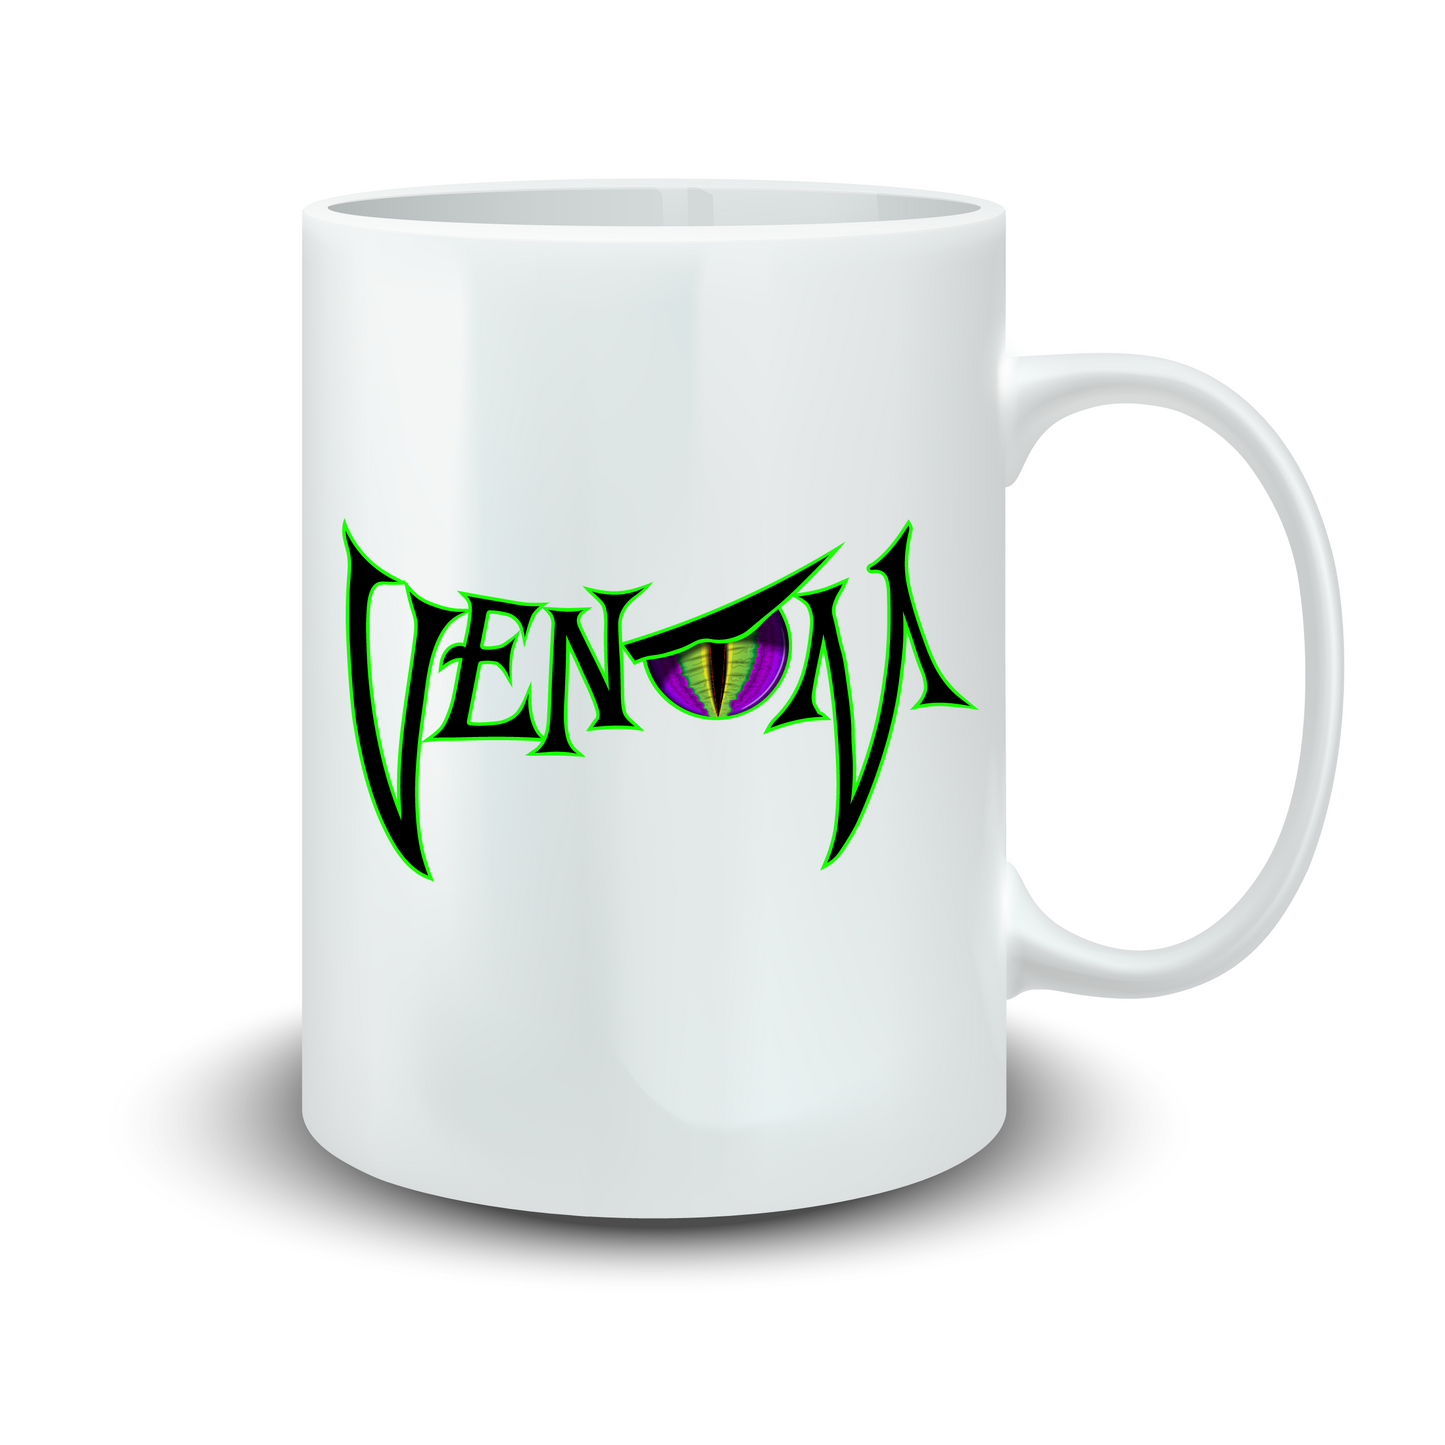 Venom Ceramic Mug